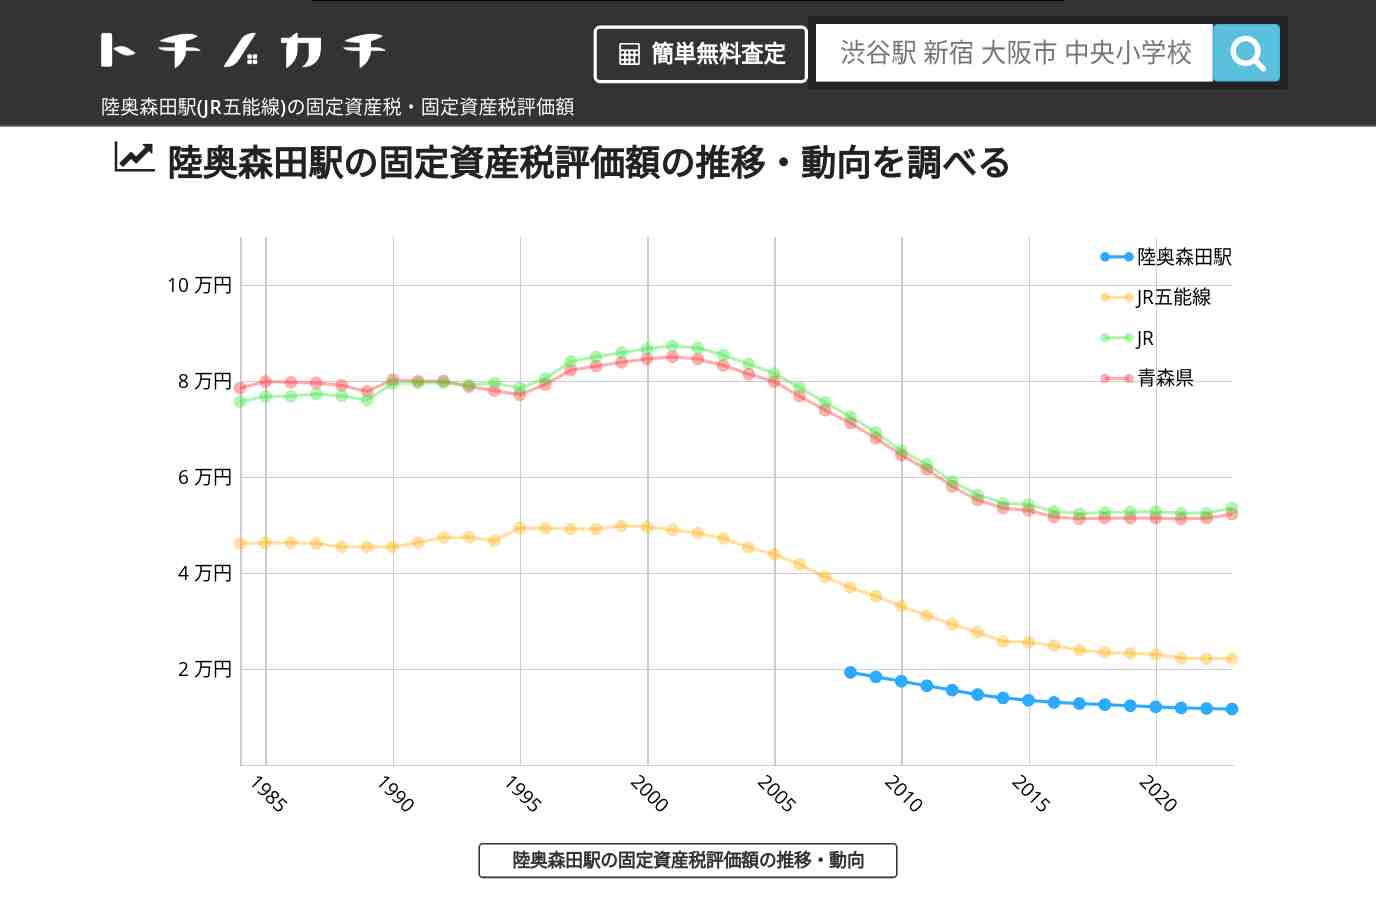 陸奥森田駅(JR五能線)の固定資産税・固定資産税評価額 | トチノカチ